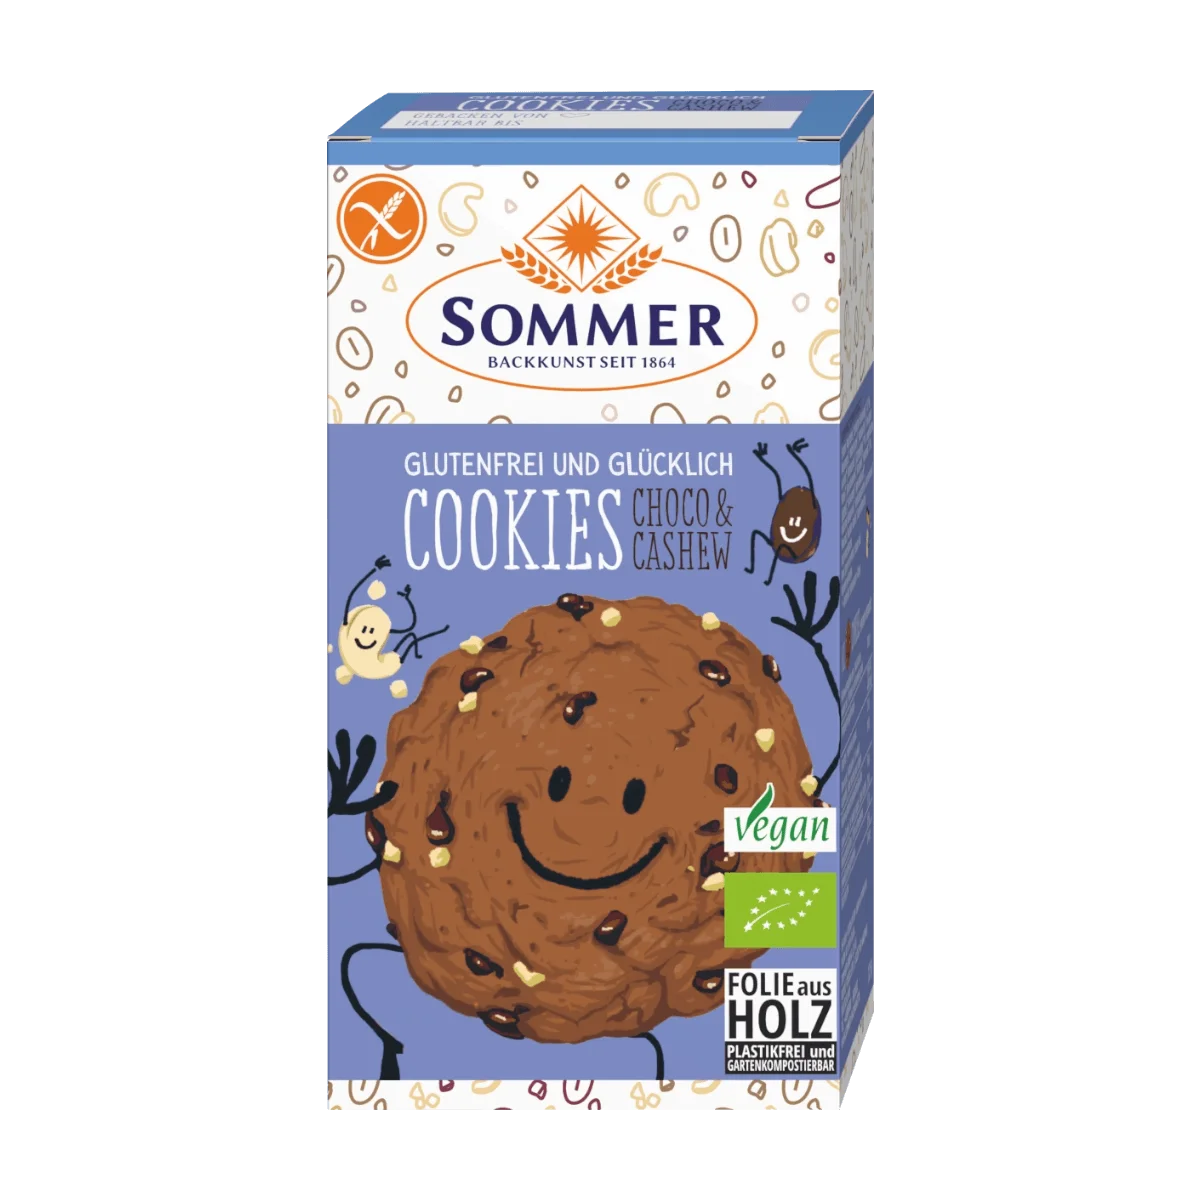 SOMMER Cookies, Choco & Cashew, glutenfrei, 125 g